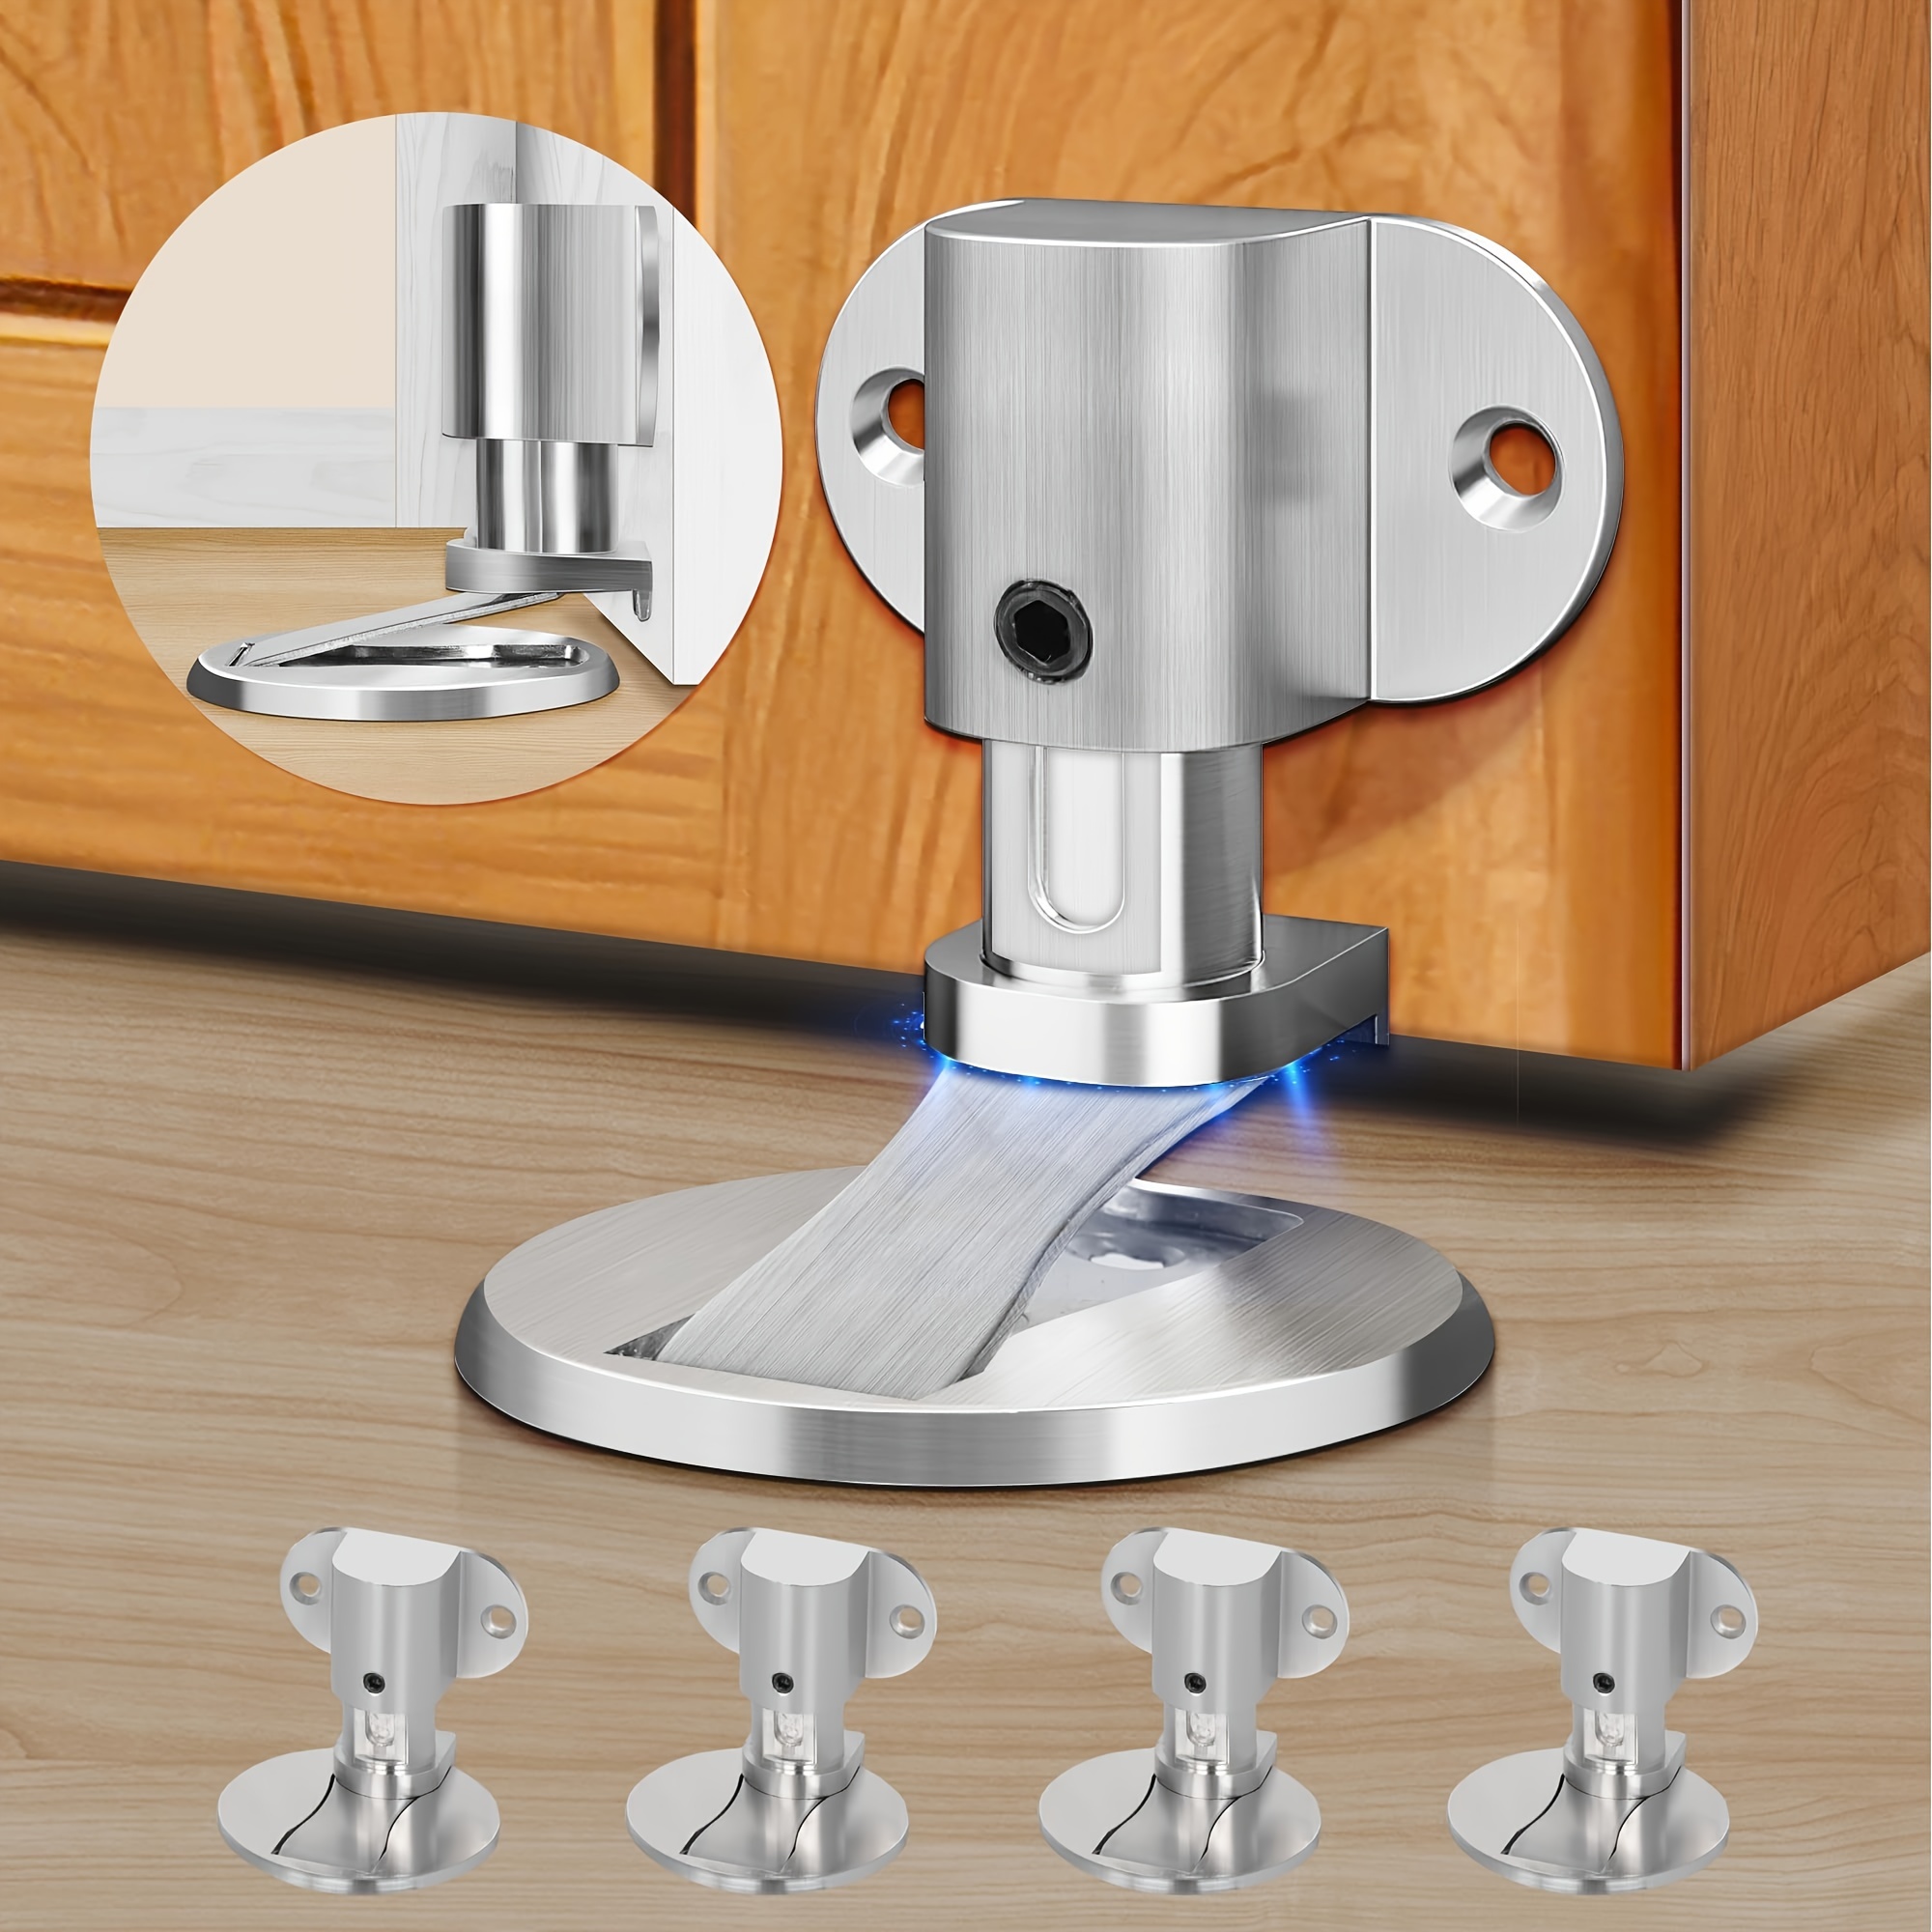 

8pcs Adjustable Magnetic Door Stoppers For Bottom Of Door, Floor Mount Adhesive Door Stop